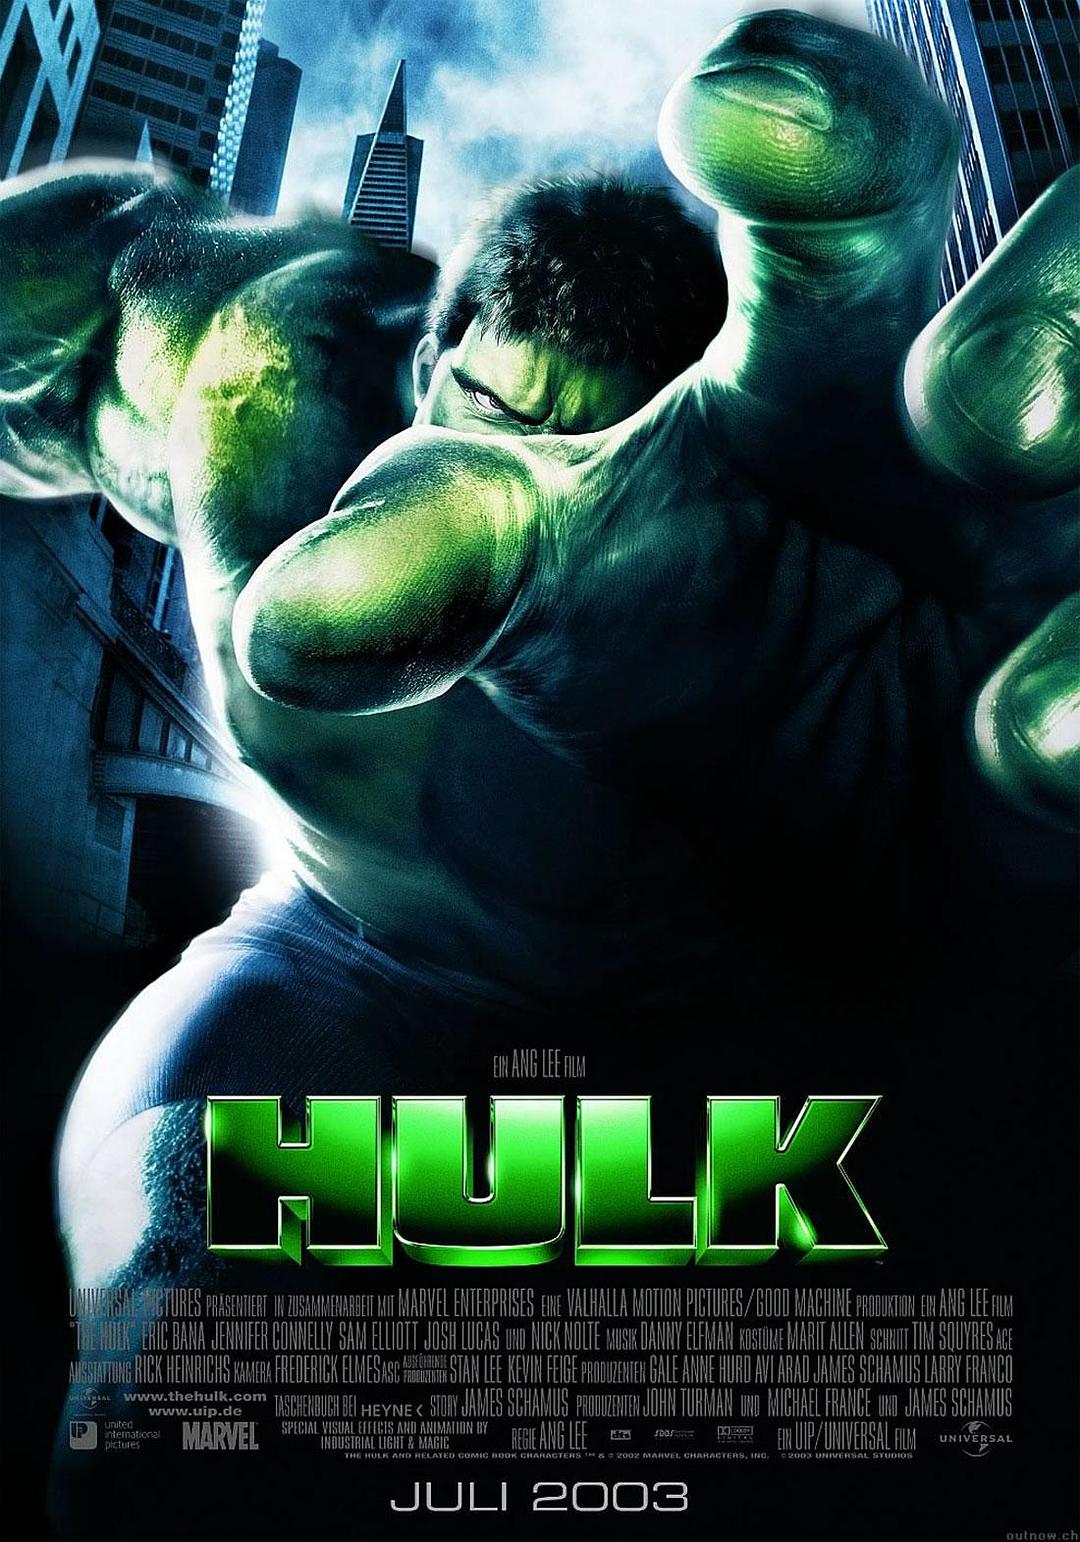 绿伟人浩克 Hulk.2003.2160p.BluRay.x264.8bit.SDR.DTS-X.7.1-SWTYBLZ 58.71GB-1.png